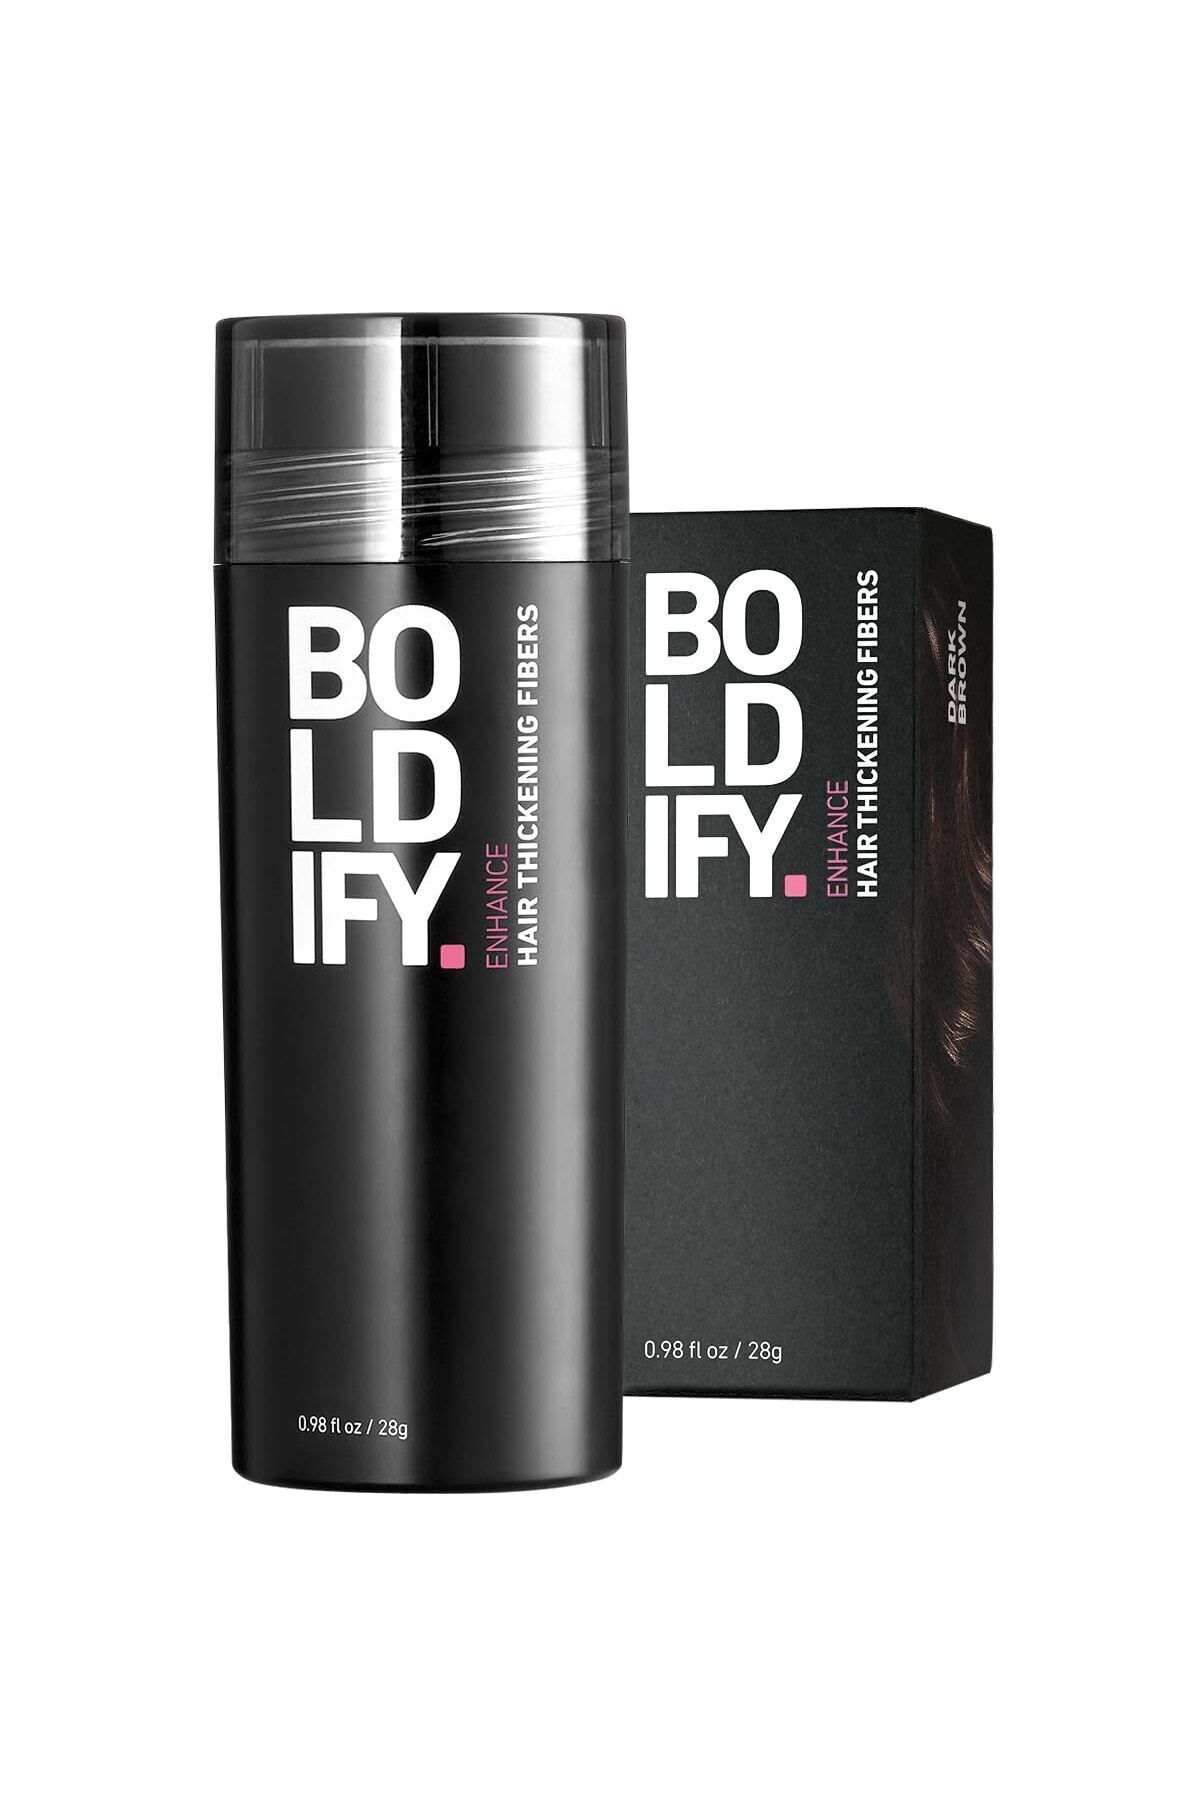 Boldify Saç Dolgunlaştırıcı Fiber, Topik Tozu Koyu Kahve 28gr- Hair Building Fibers